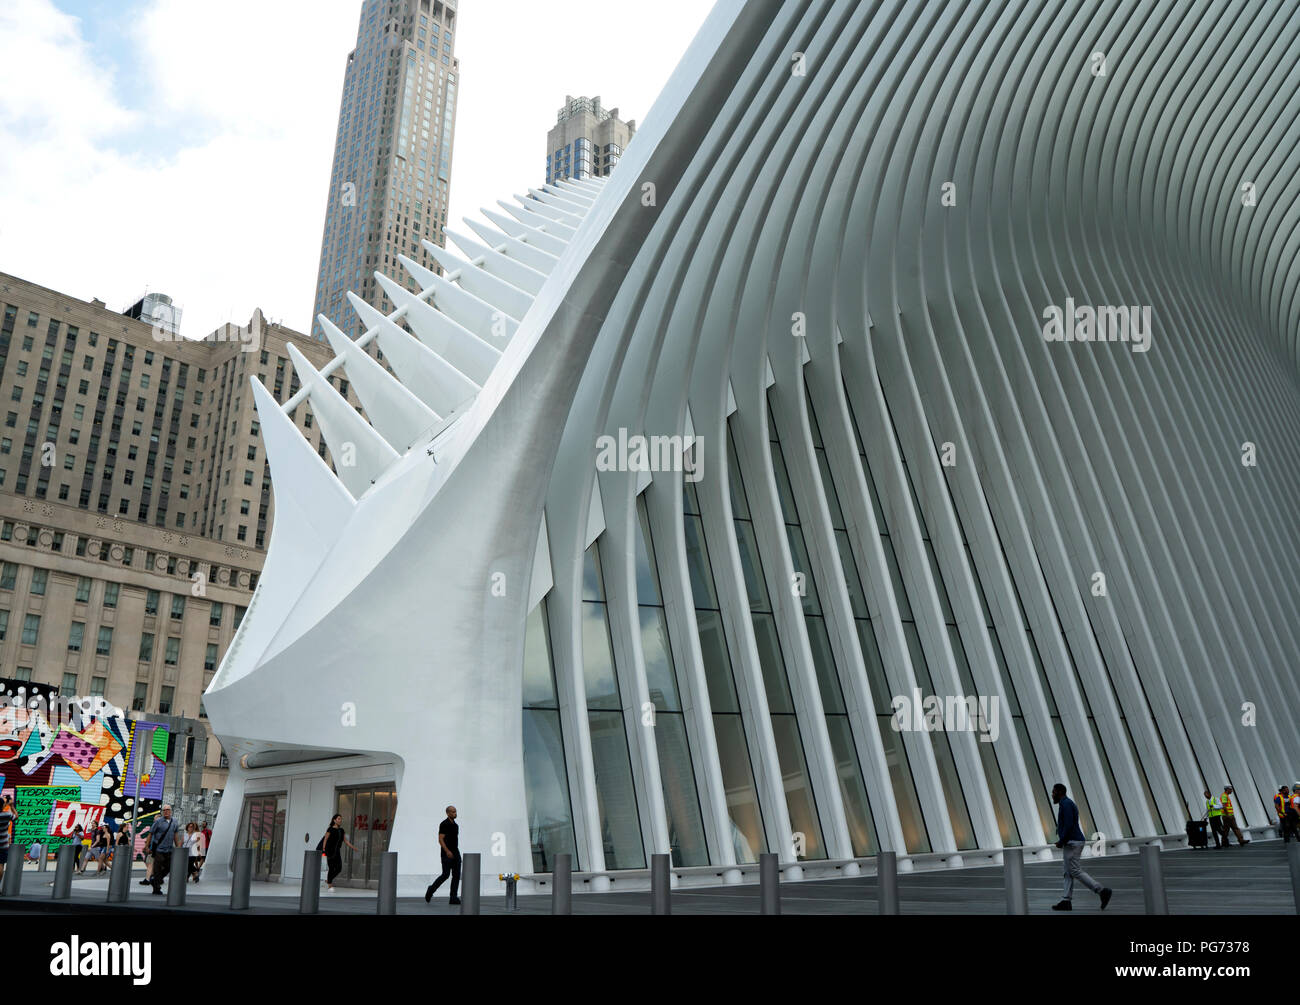 L'Oculus, conçu par l'architecte espagnol Santiago Calatrava, abrite les magasins de détail et sert de plaque tournante du transport dans la région de Lower Manhattan. Banque D'Images